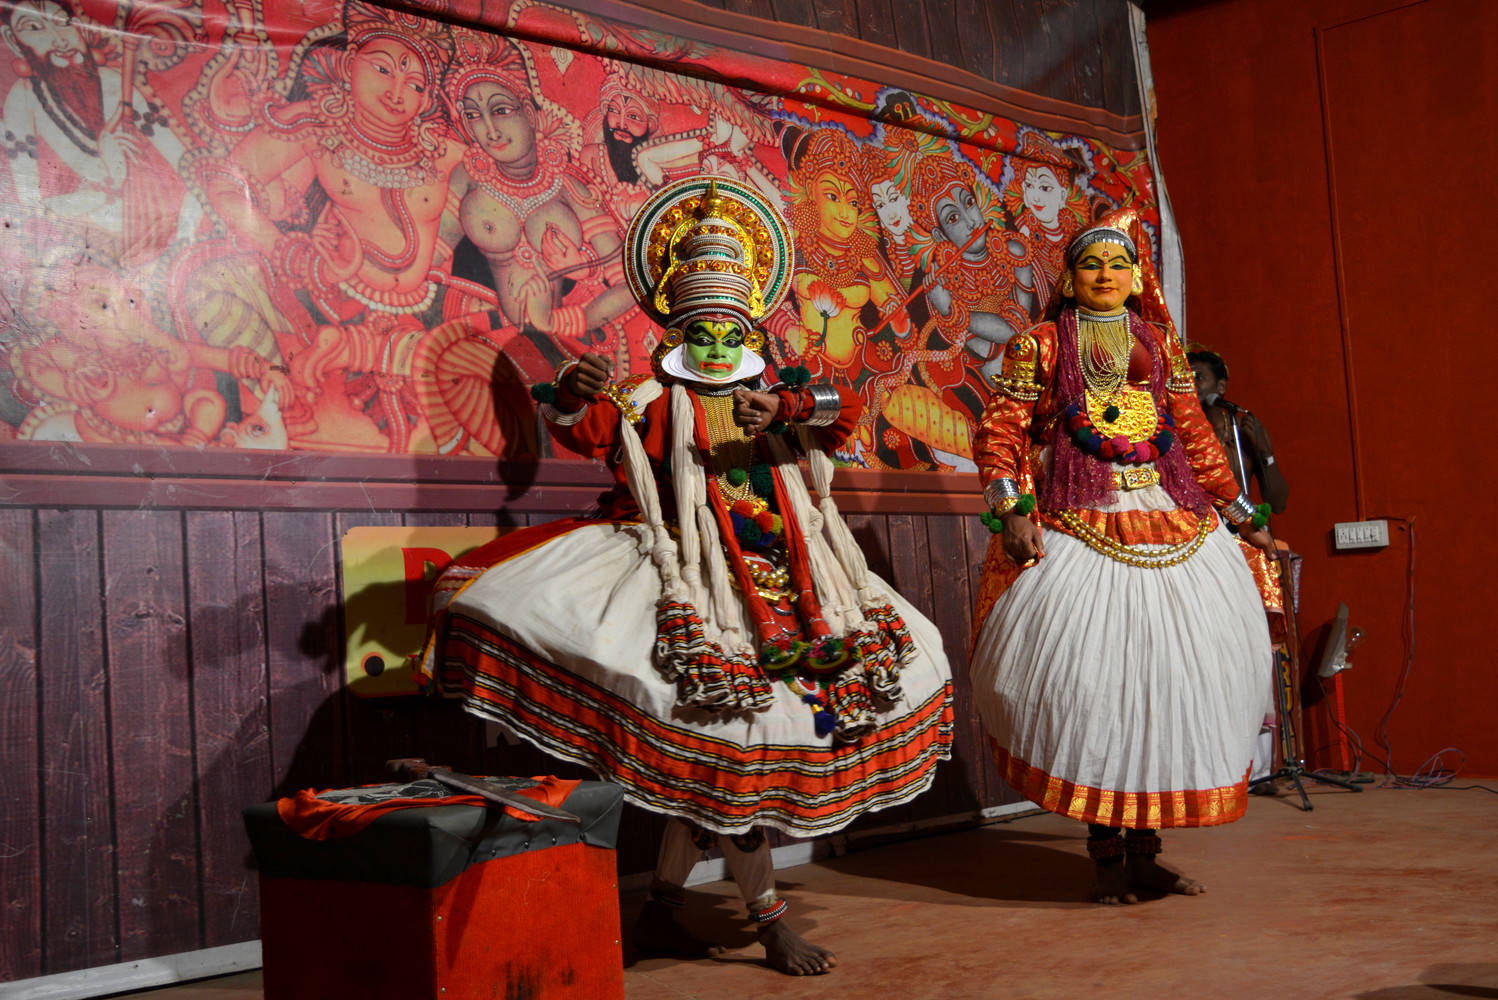 Two Kathakali artists dancing